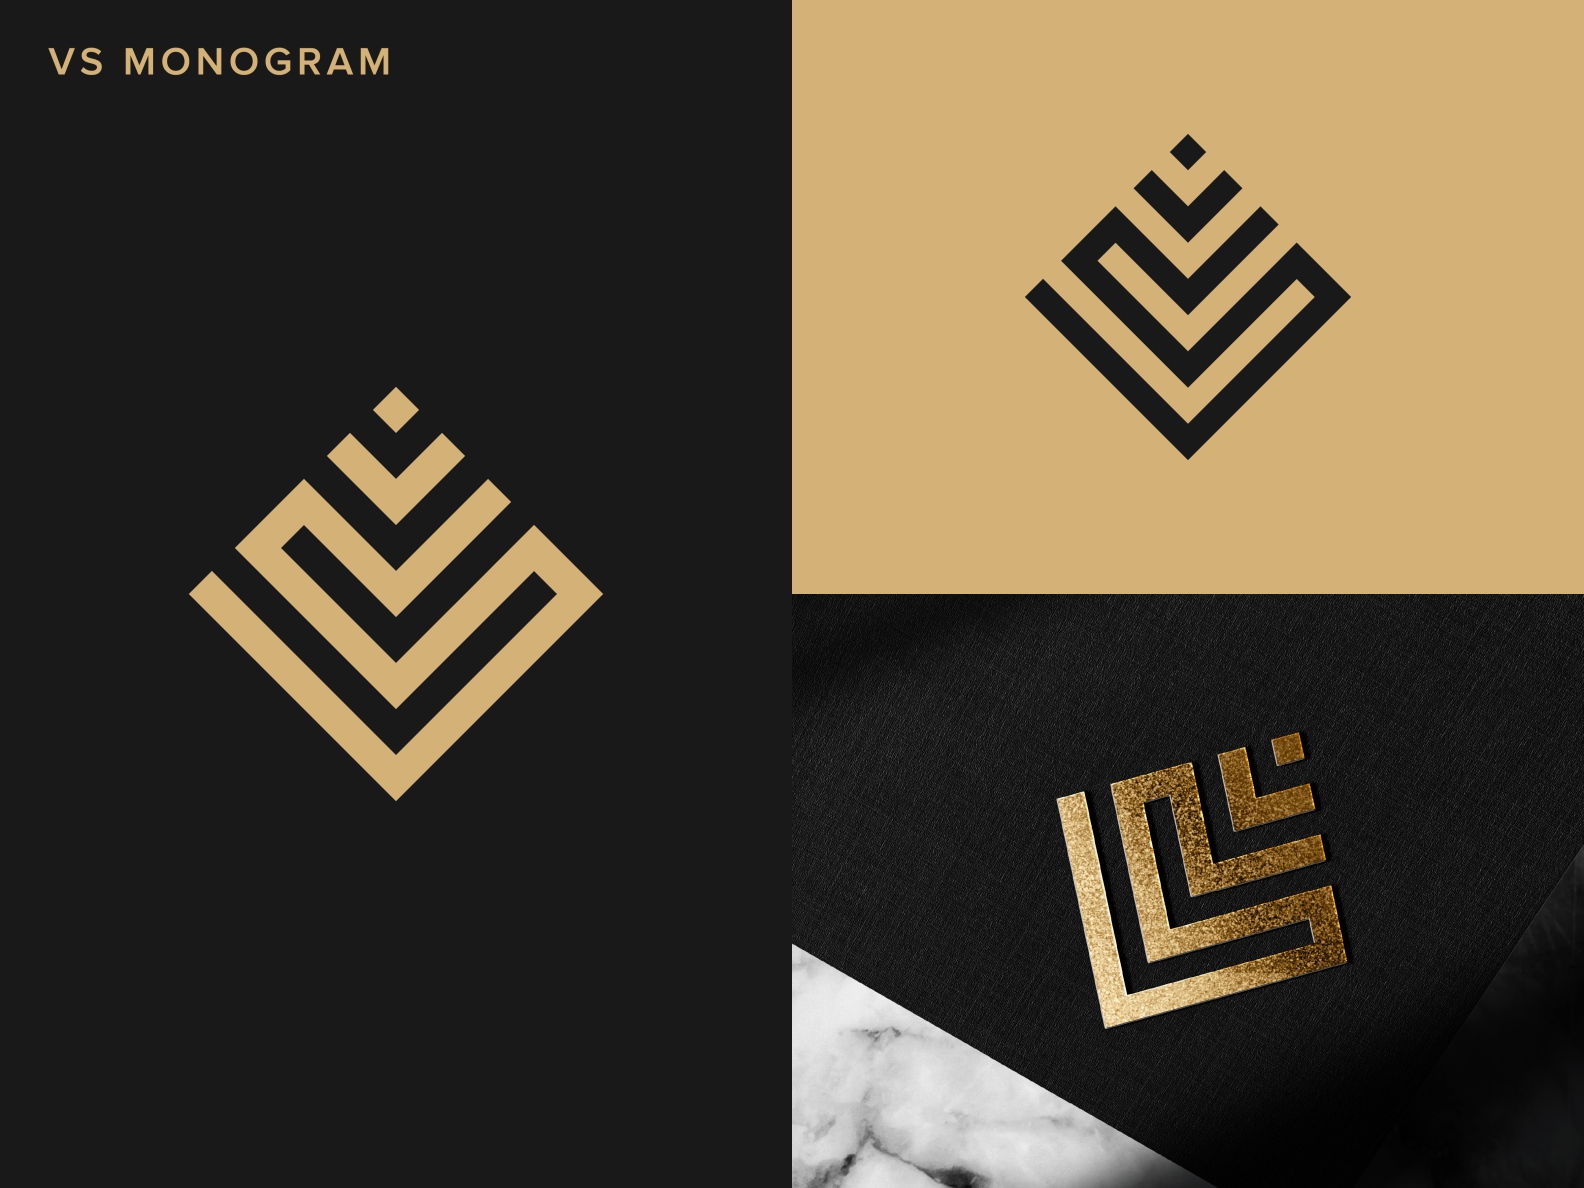 VS Monogram | Letter mark logo by sabuj on Dribbble